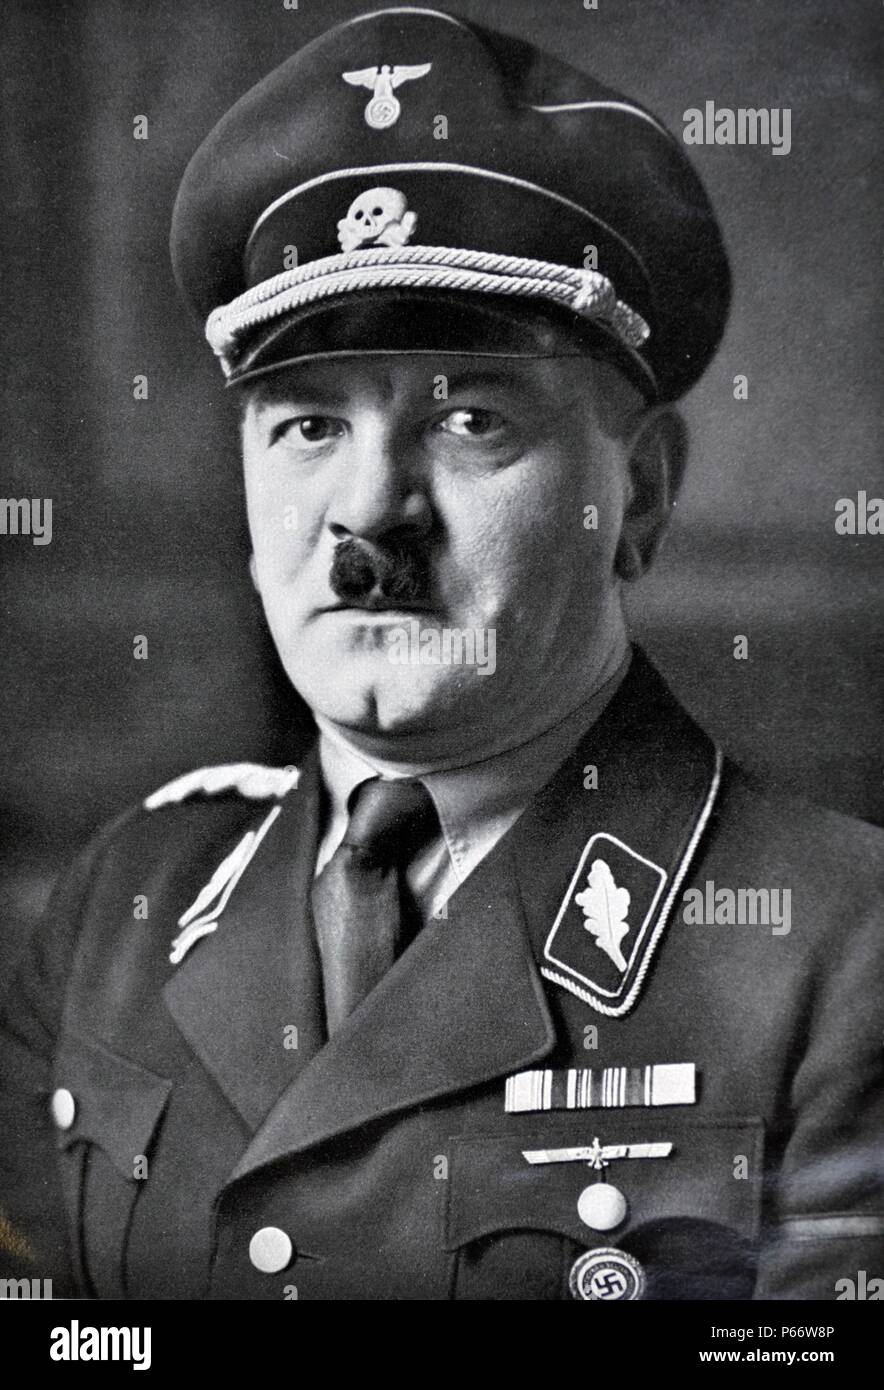 Julius Schreck (Juillet 13, 1898 - Munich, 16 mai 1936) a été l'un des membre du parti nazi et aussi le premier commandant de la Schutzstaffel (SS). Banque D'Images